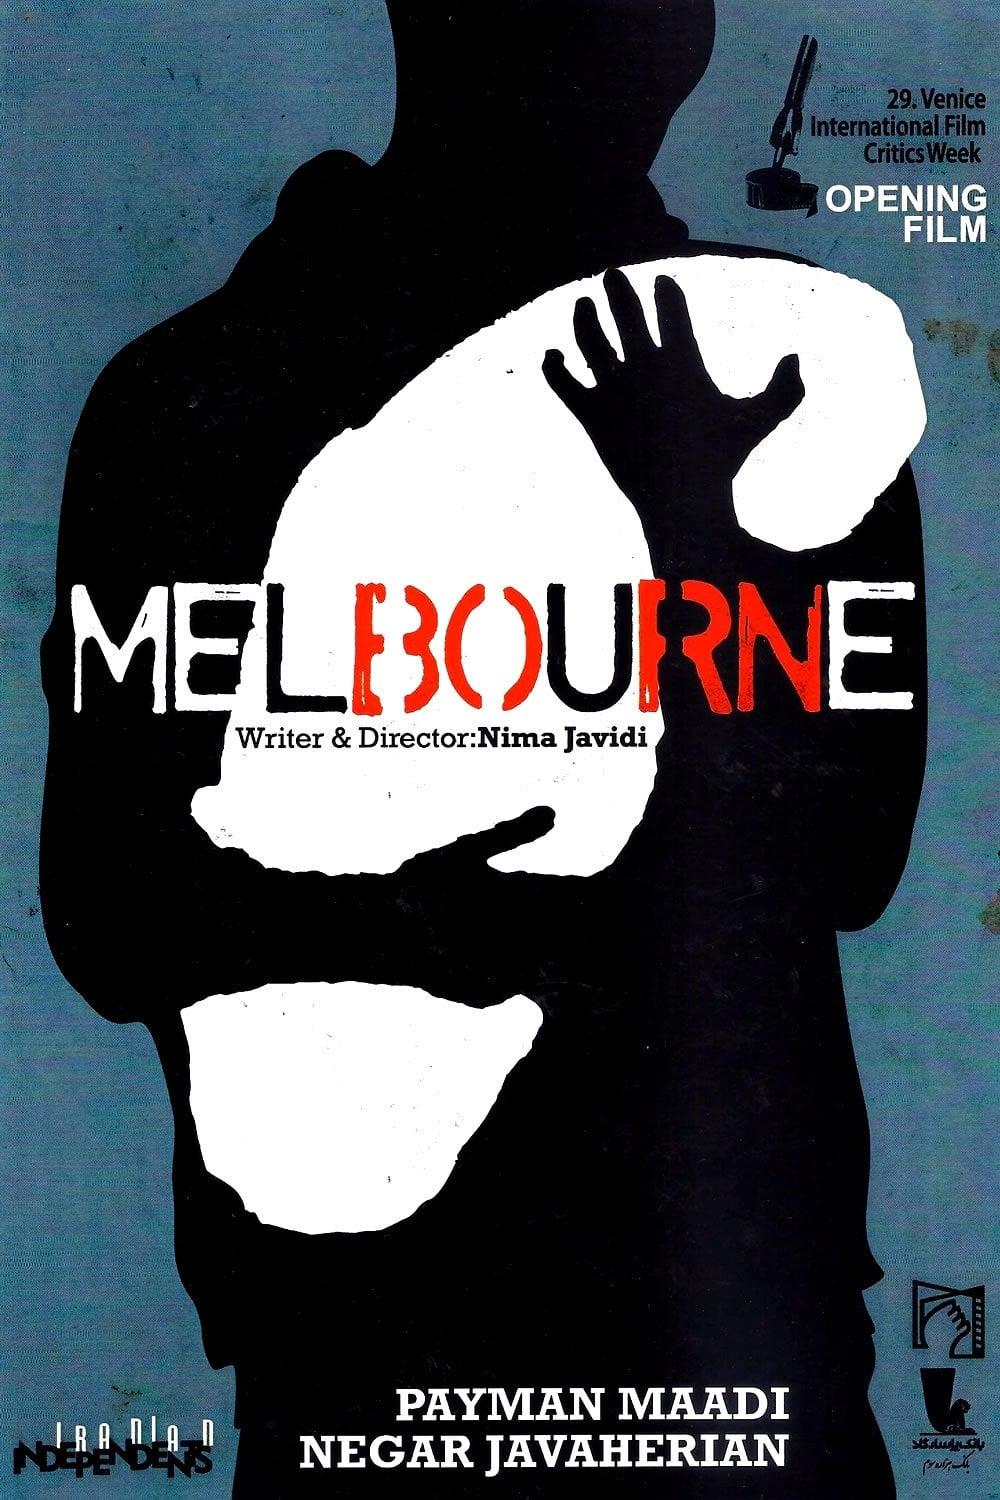 Melbourne poster